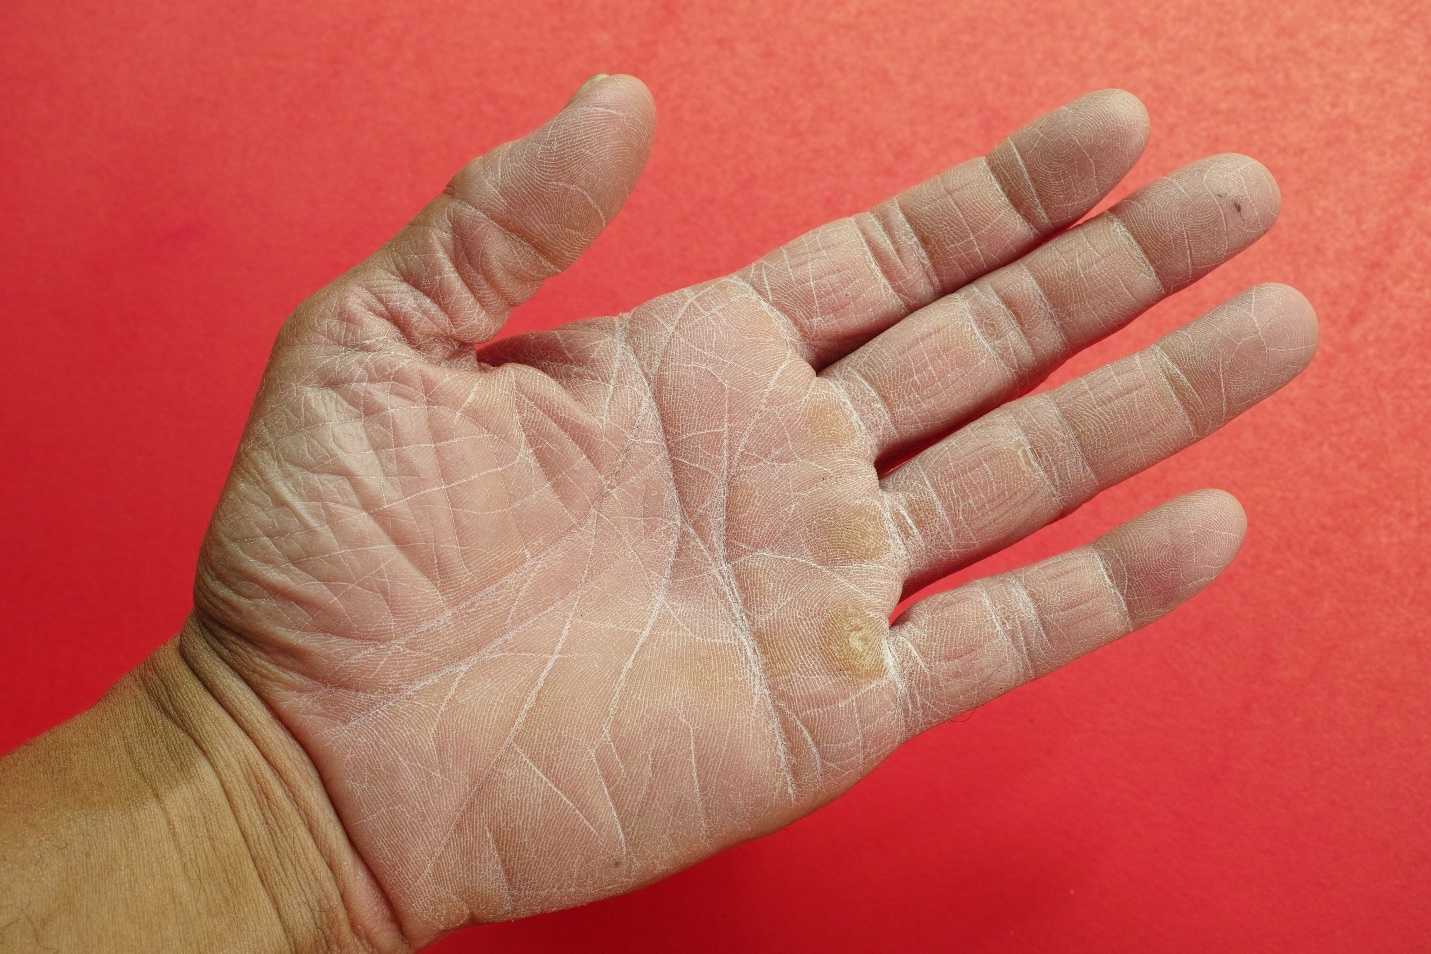 Шелушение кожи на руках: патология или временный дискомфорт